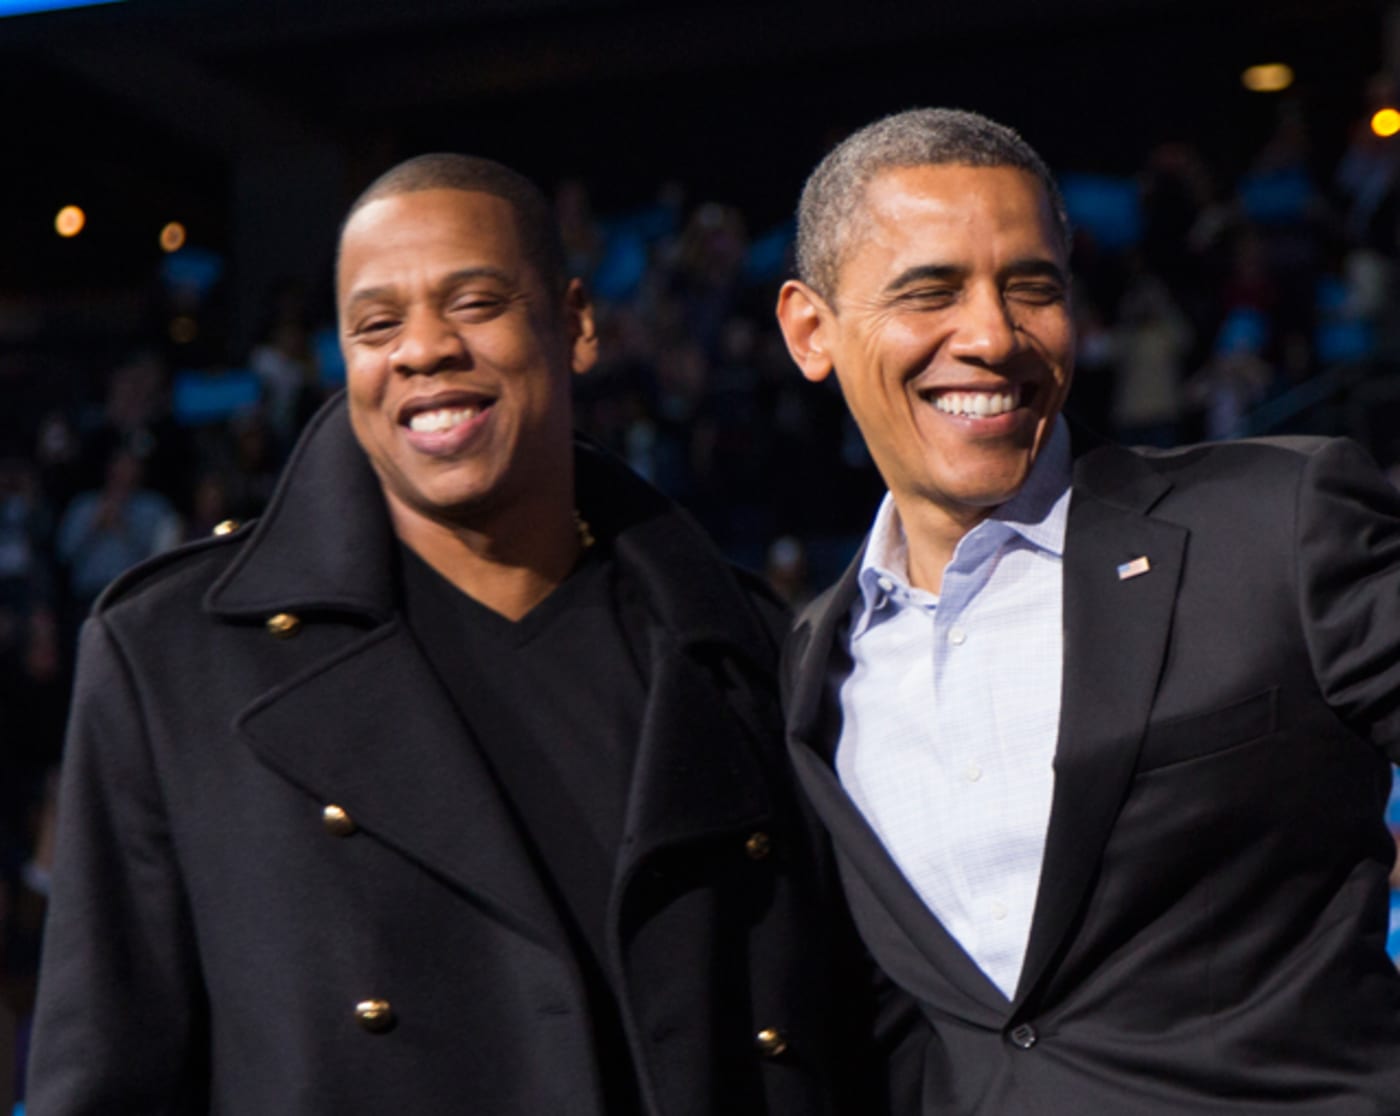 Jay Z and Barack Obama